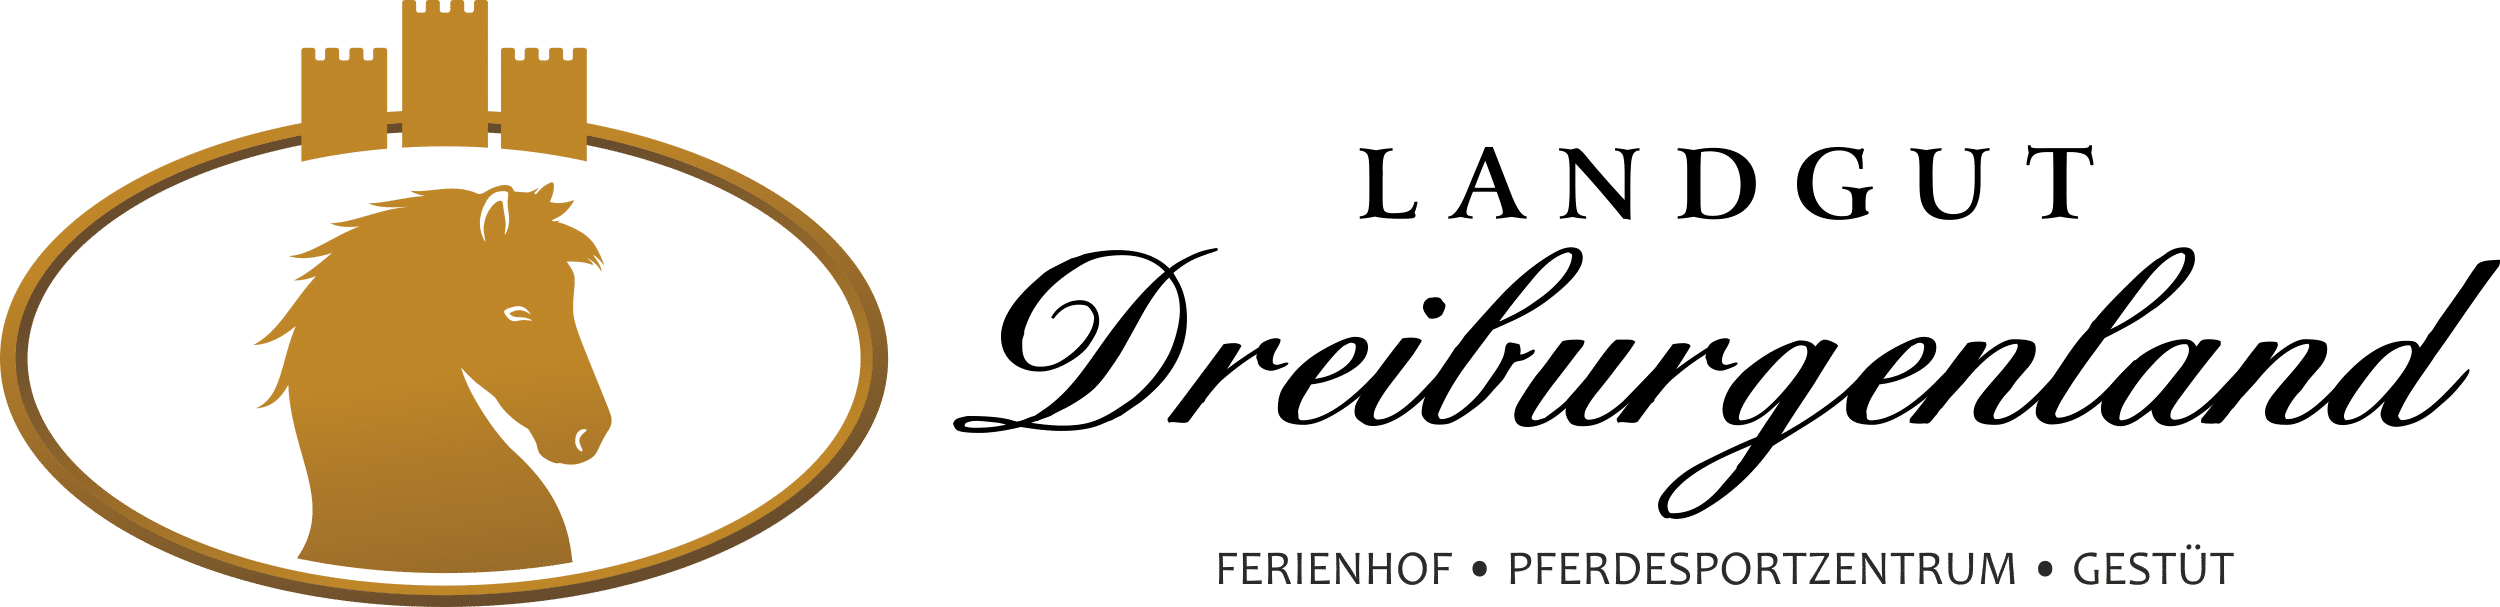 Ferienhof, Pferdesportzentrum und Gestüt "Landgut Dreiburgenland" | Unser Reiterhof im Bayerischen Wald - Landgut-Dreiburgenland